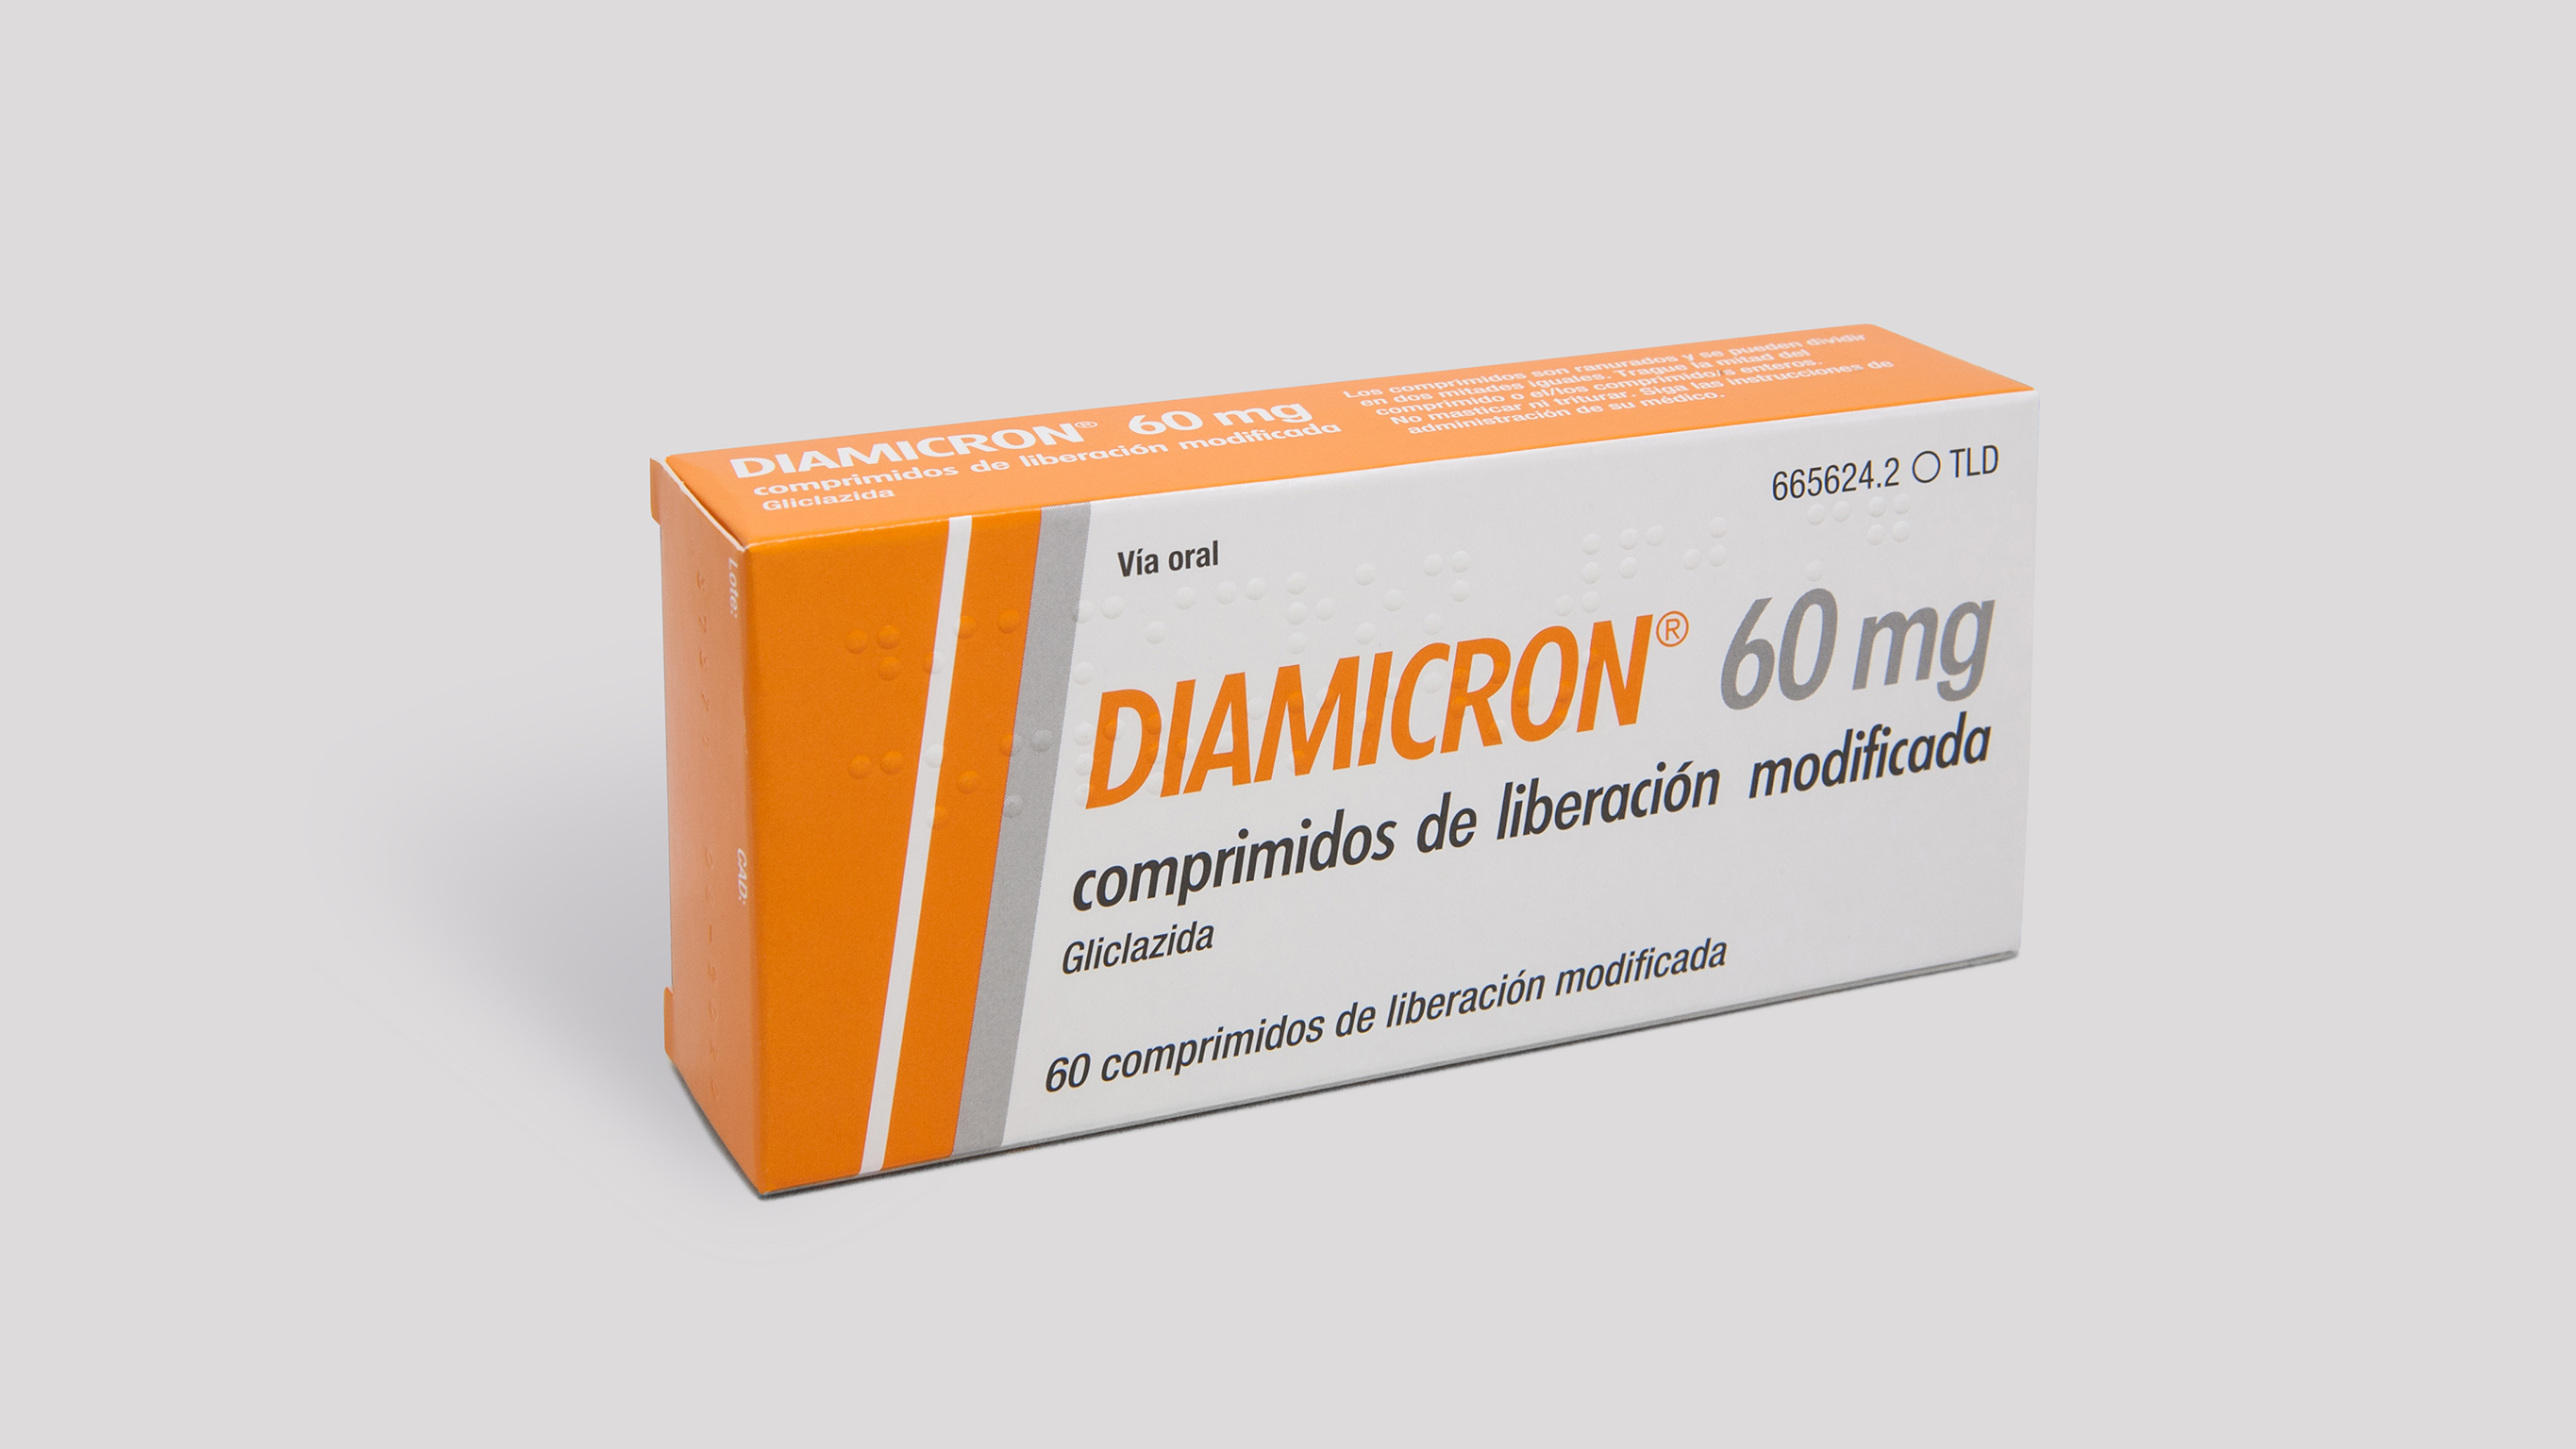 DIAMICRON 60 mg 60 COMPRIMIDOS LIBERACION MODIFICADA